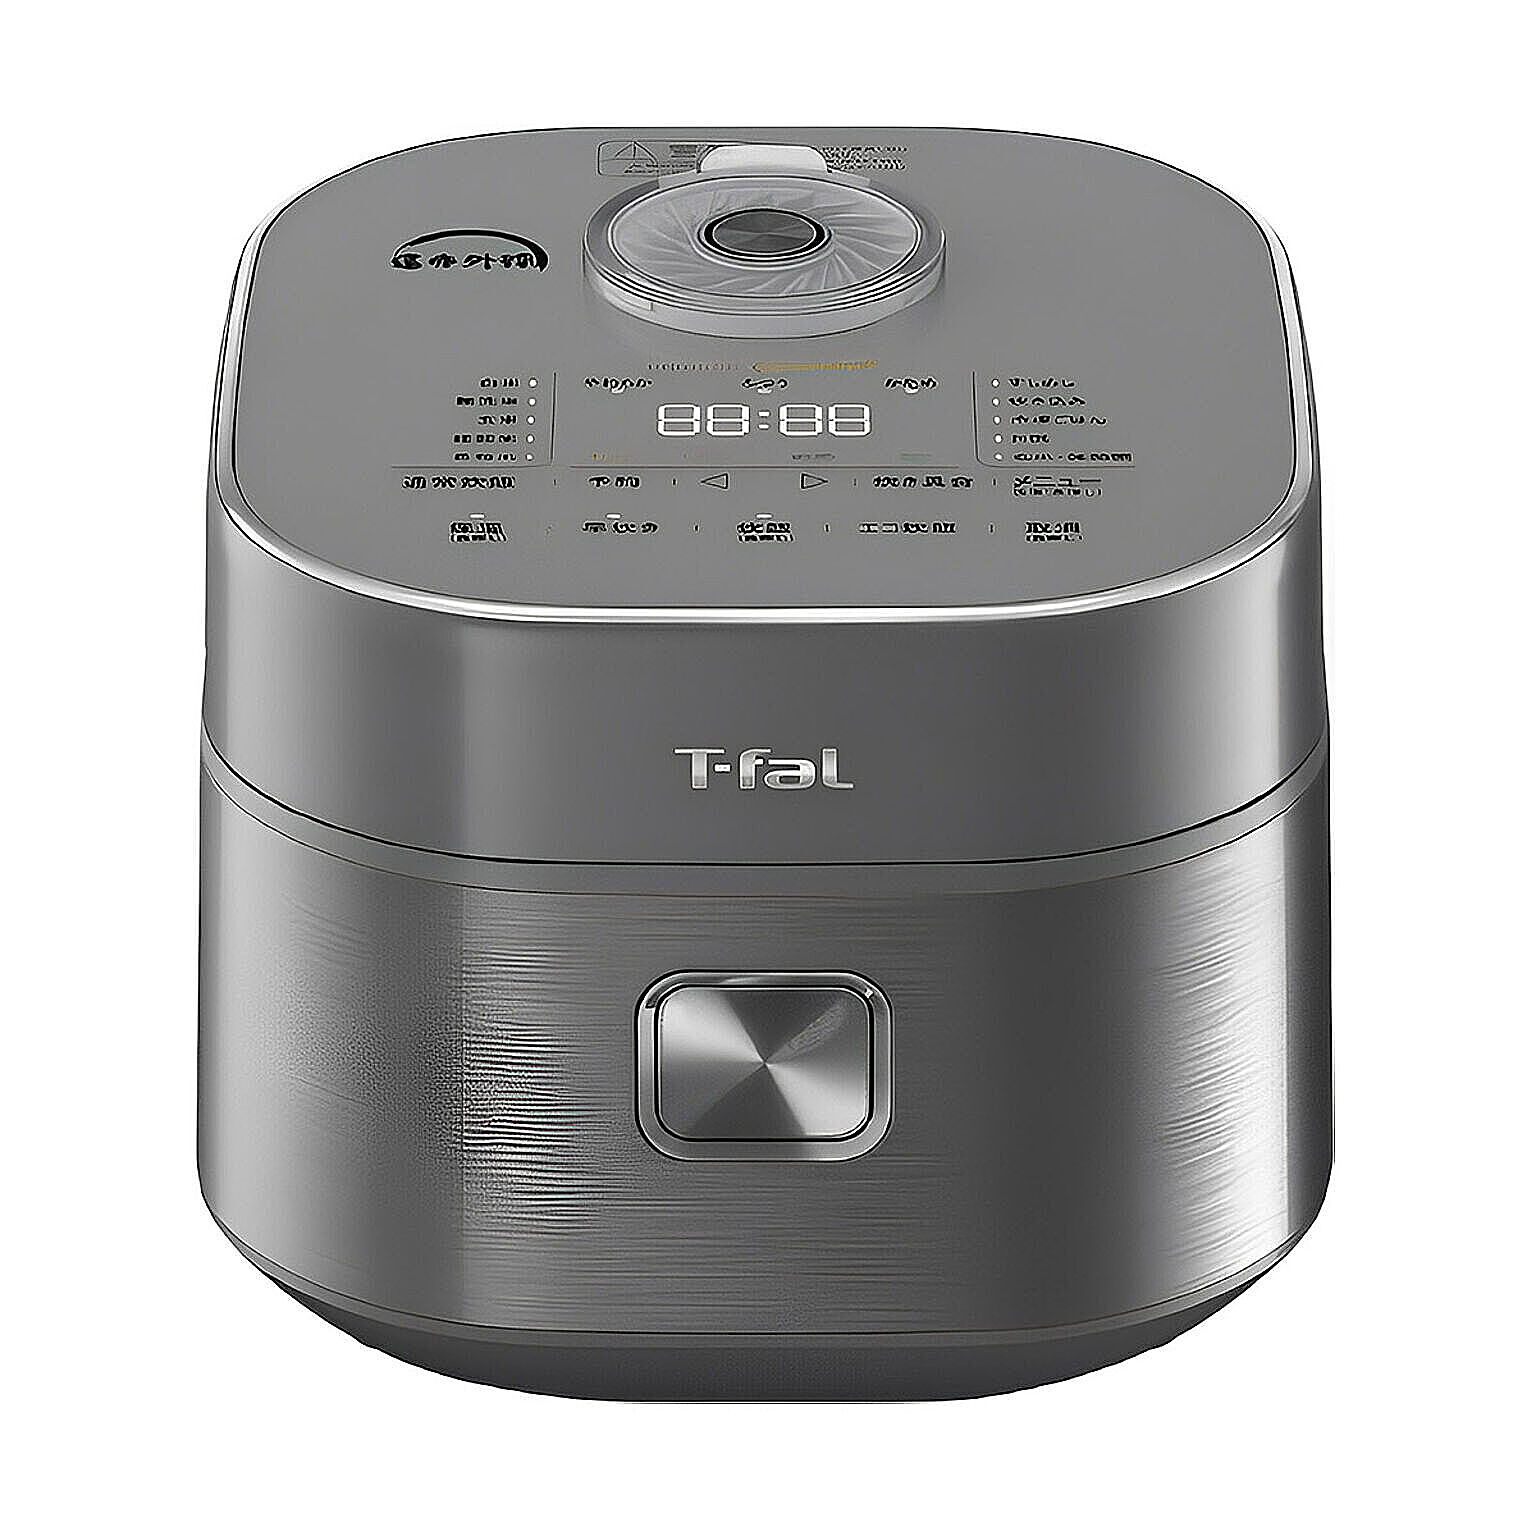 T-fal 遠赤外線IH炊飯器 ザ・ライス 5.5合 RK8808JP メタリック - 通販